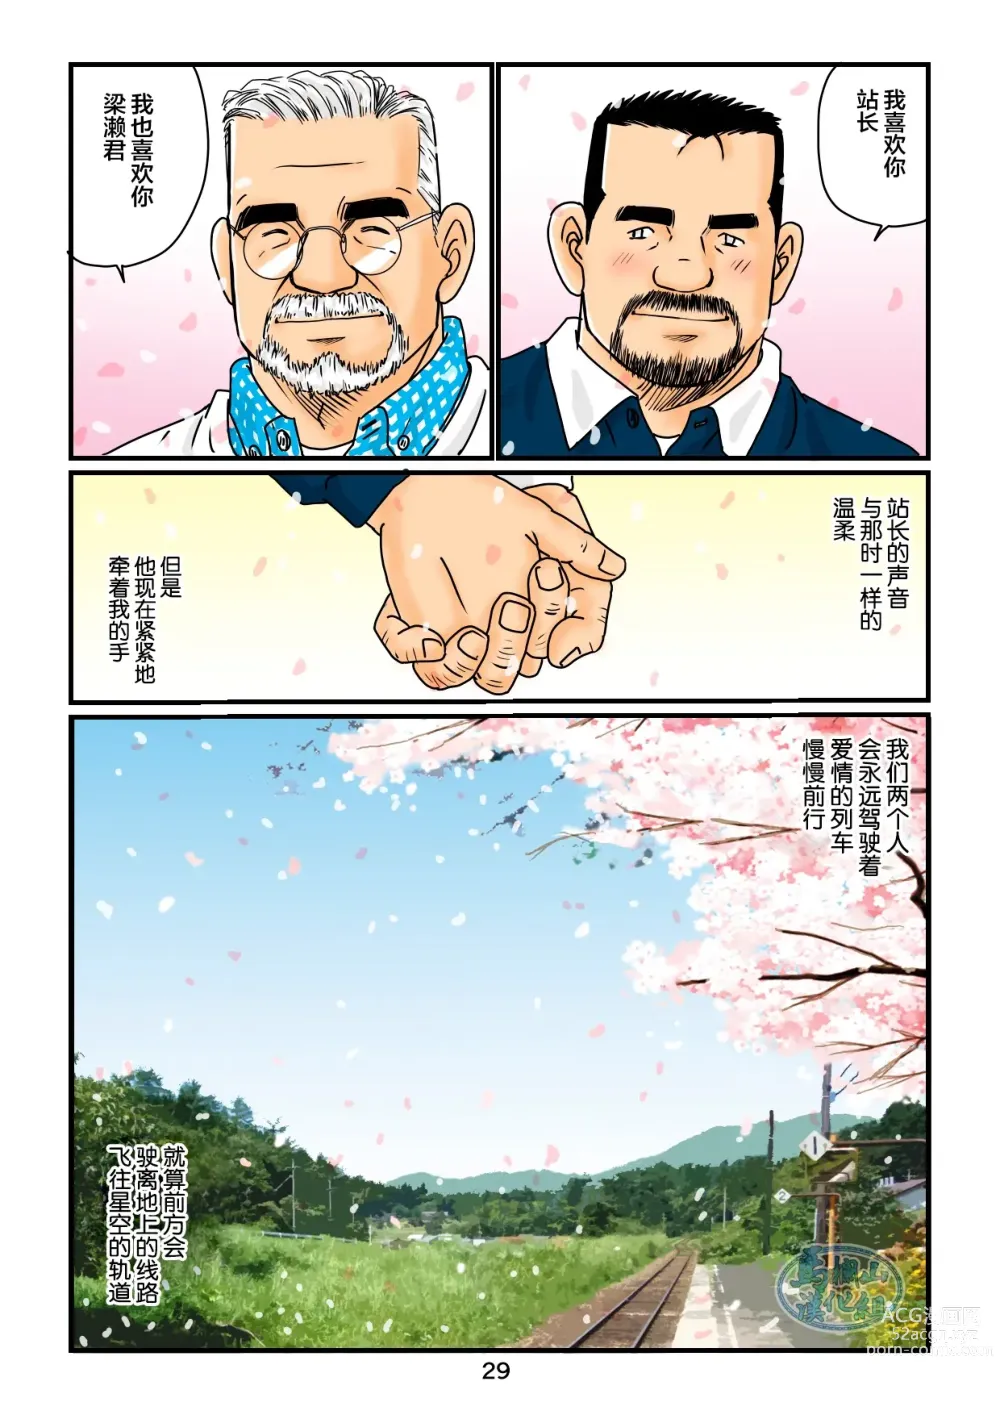 Page 29 of manga 「铁道员的浪漫」 第四回 站长和铁道员的前路